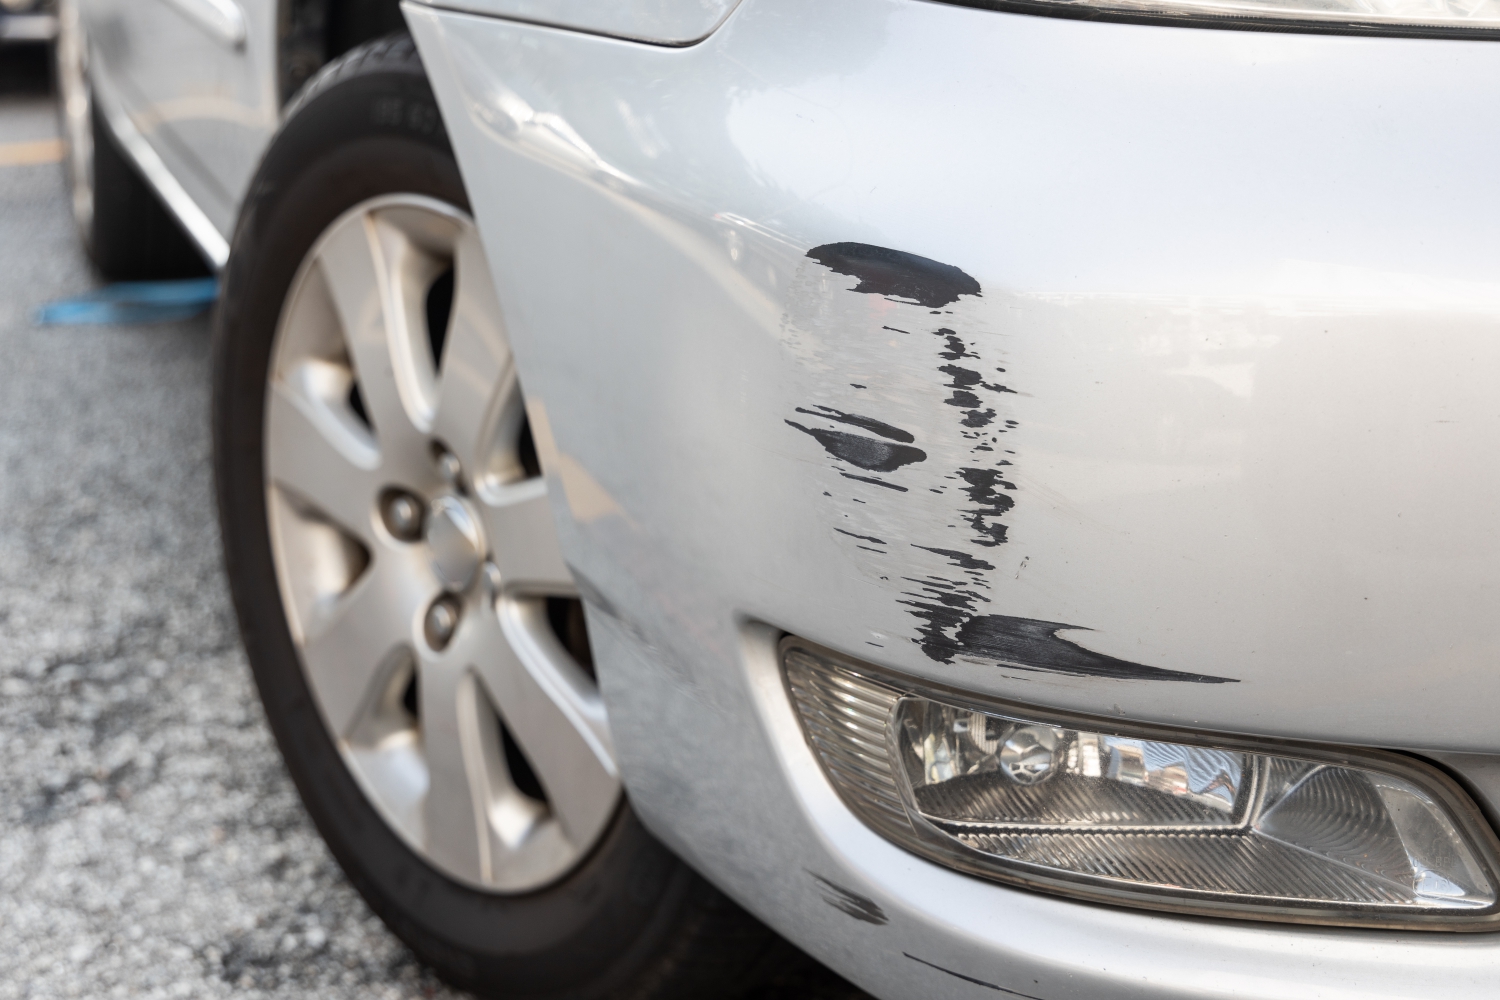 Beulen, Dellen und Kratzer am Auto: Smart Repair kann Kosten senken